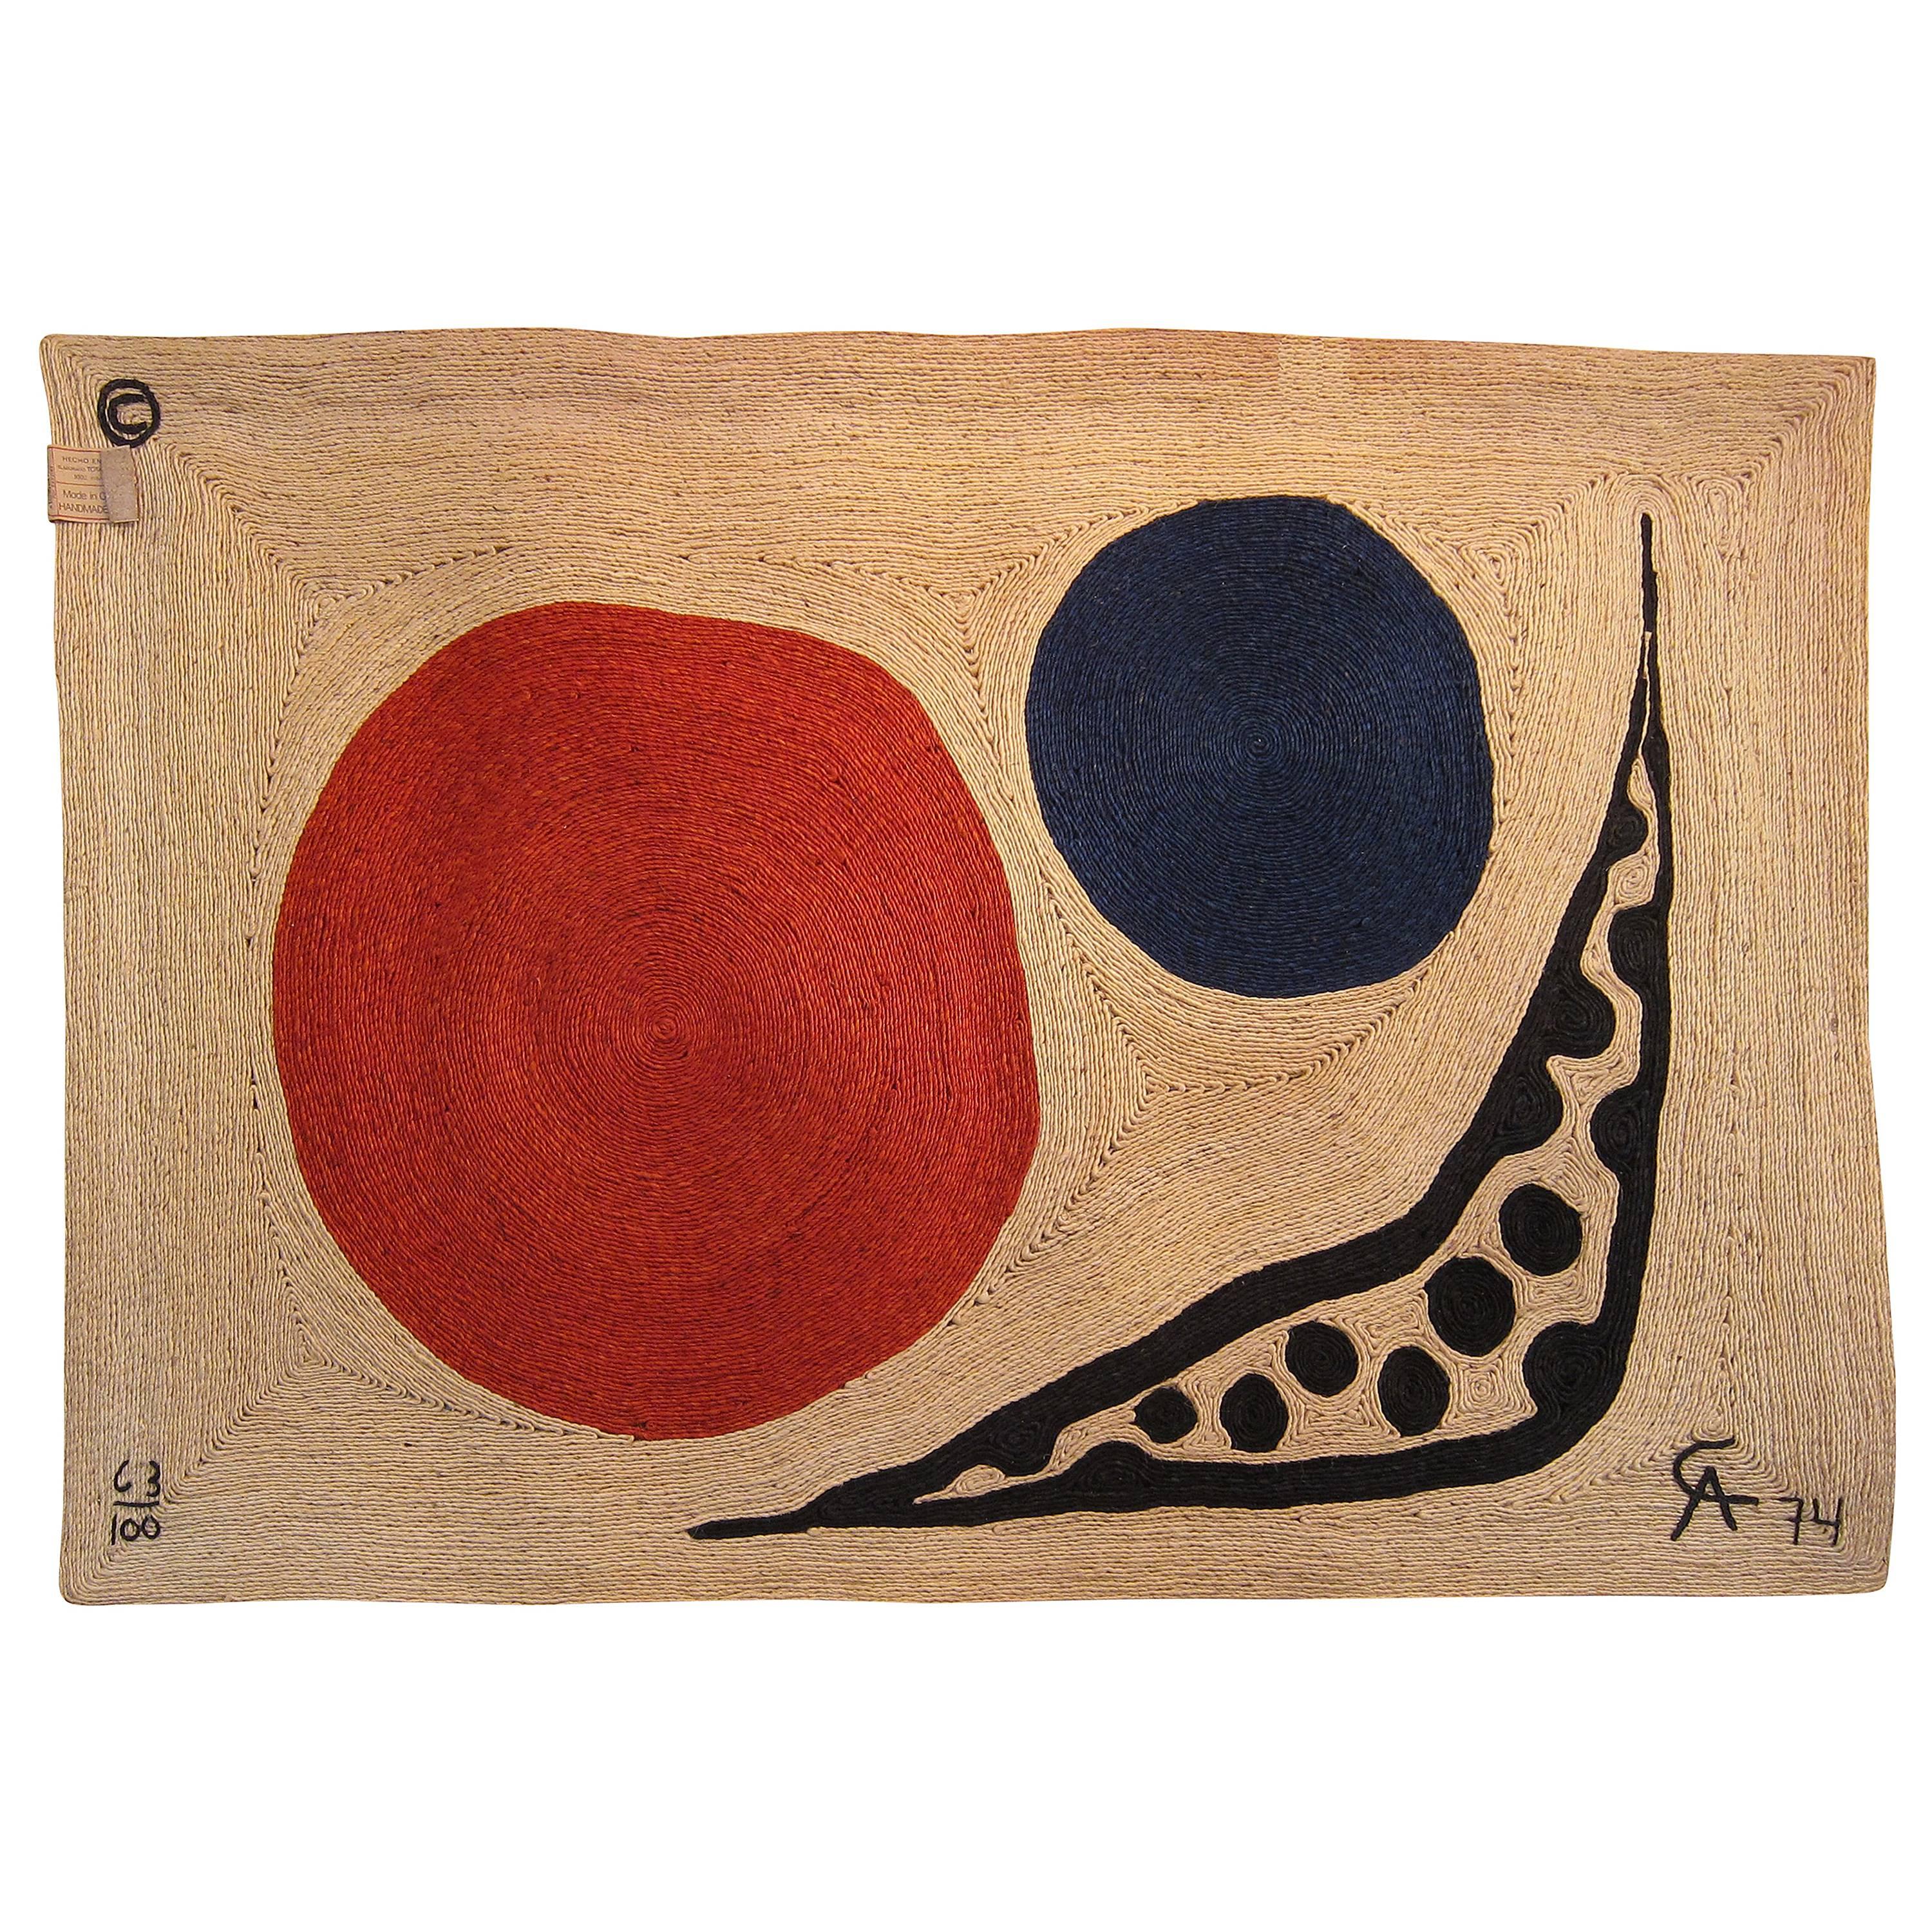 After Alexander Calder, Tapestry "Moon, " 1974